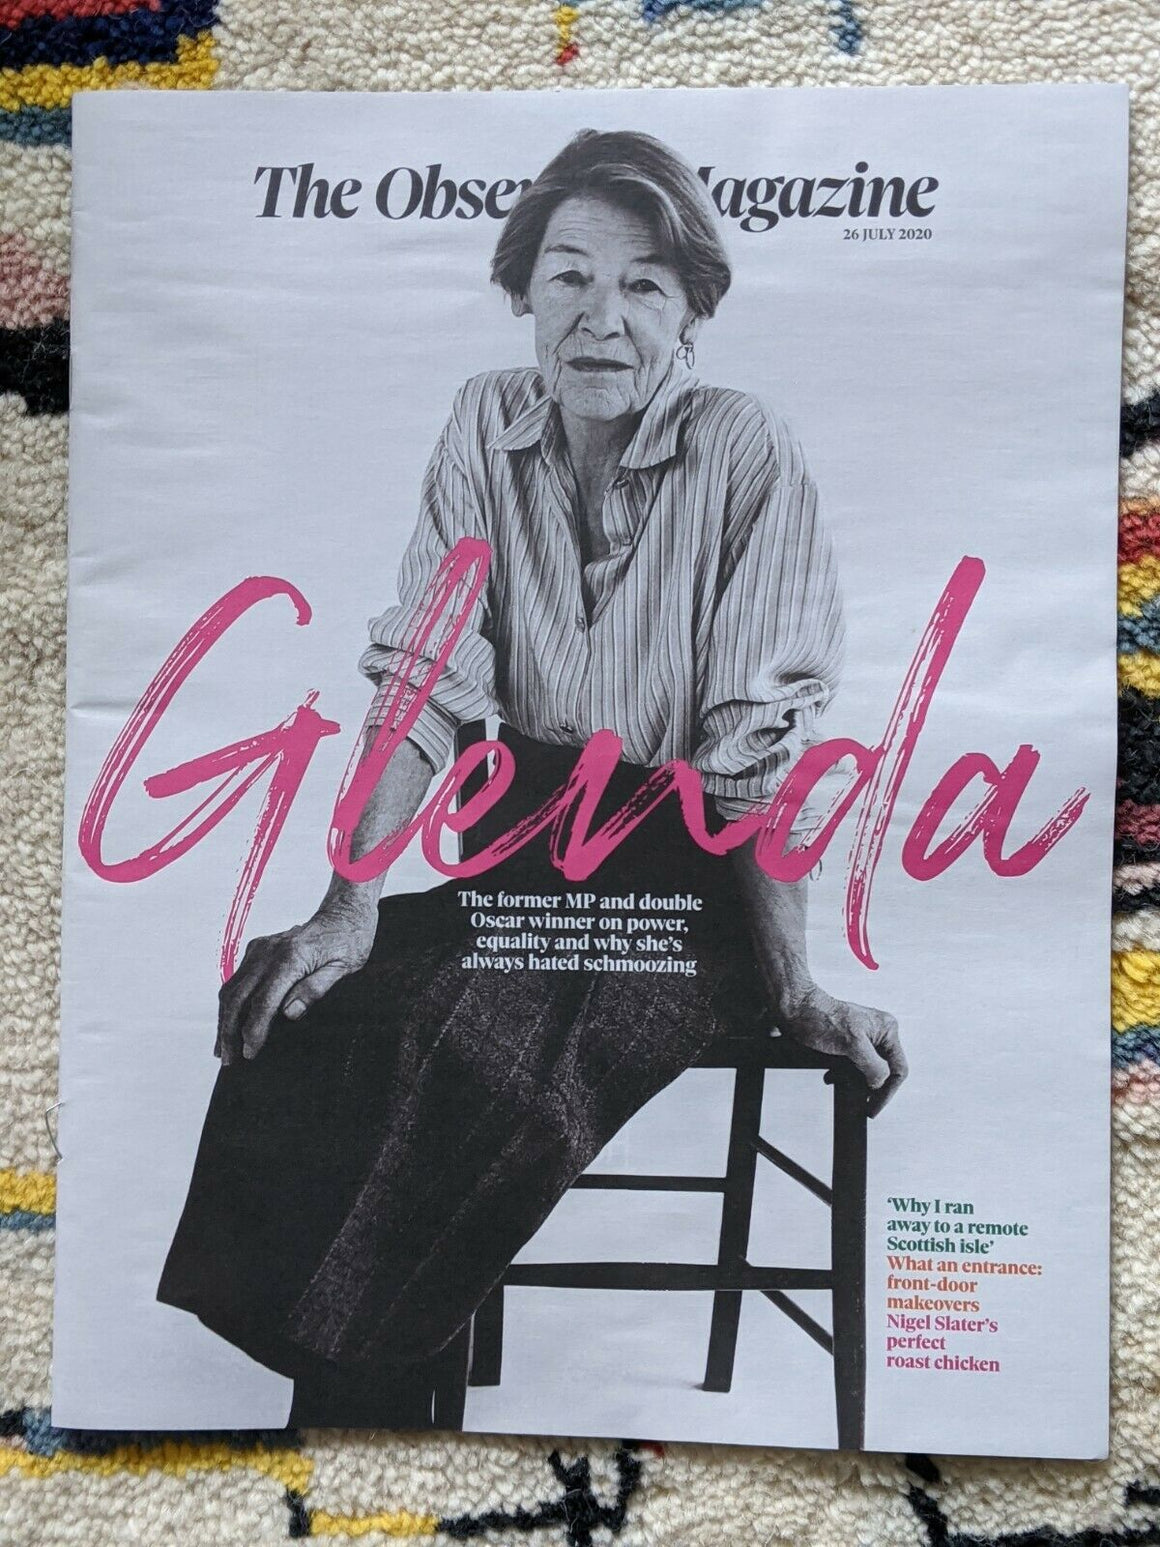 UK OBSERVER Magazine July 2020: GLENDA JACKSON COVER FEATURE